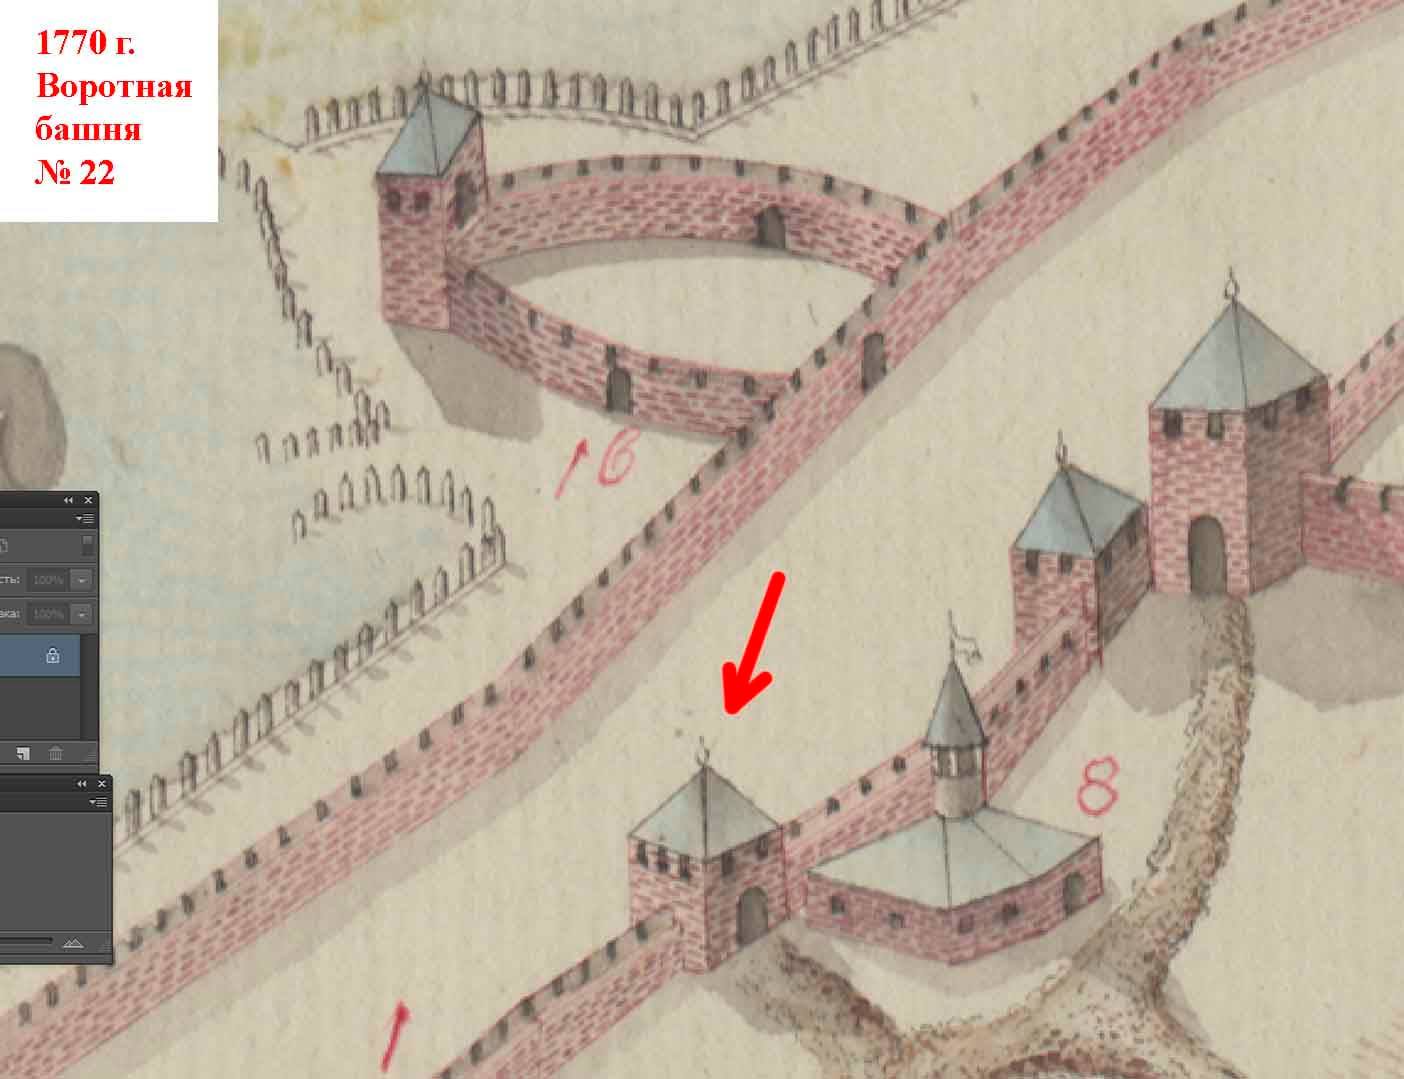 Дыра в верхней части стены воротной башни: Аккерманской крепости грозит разрушение